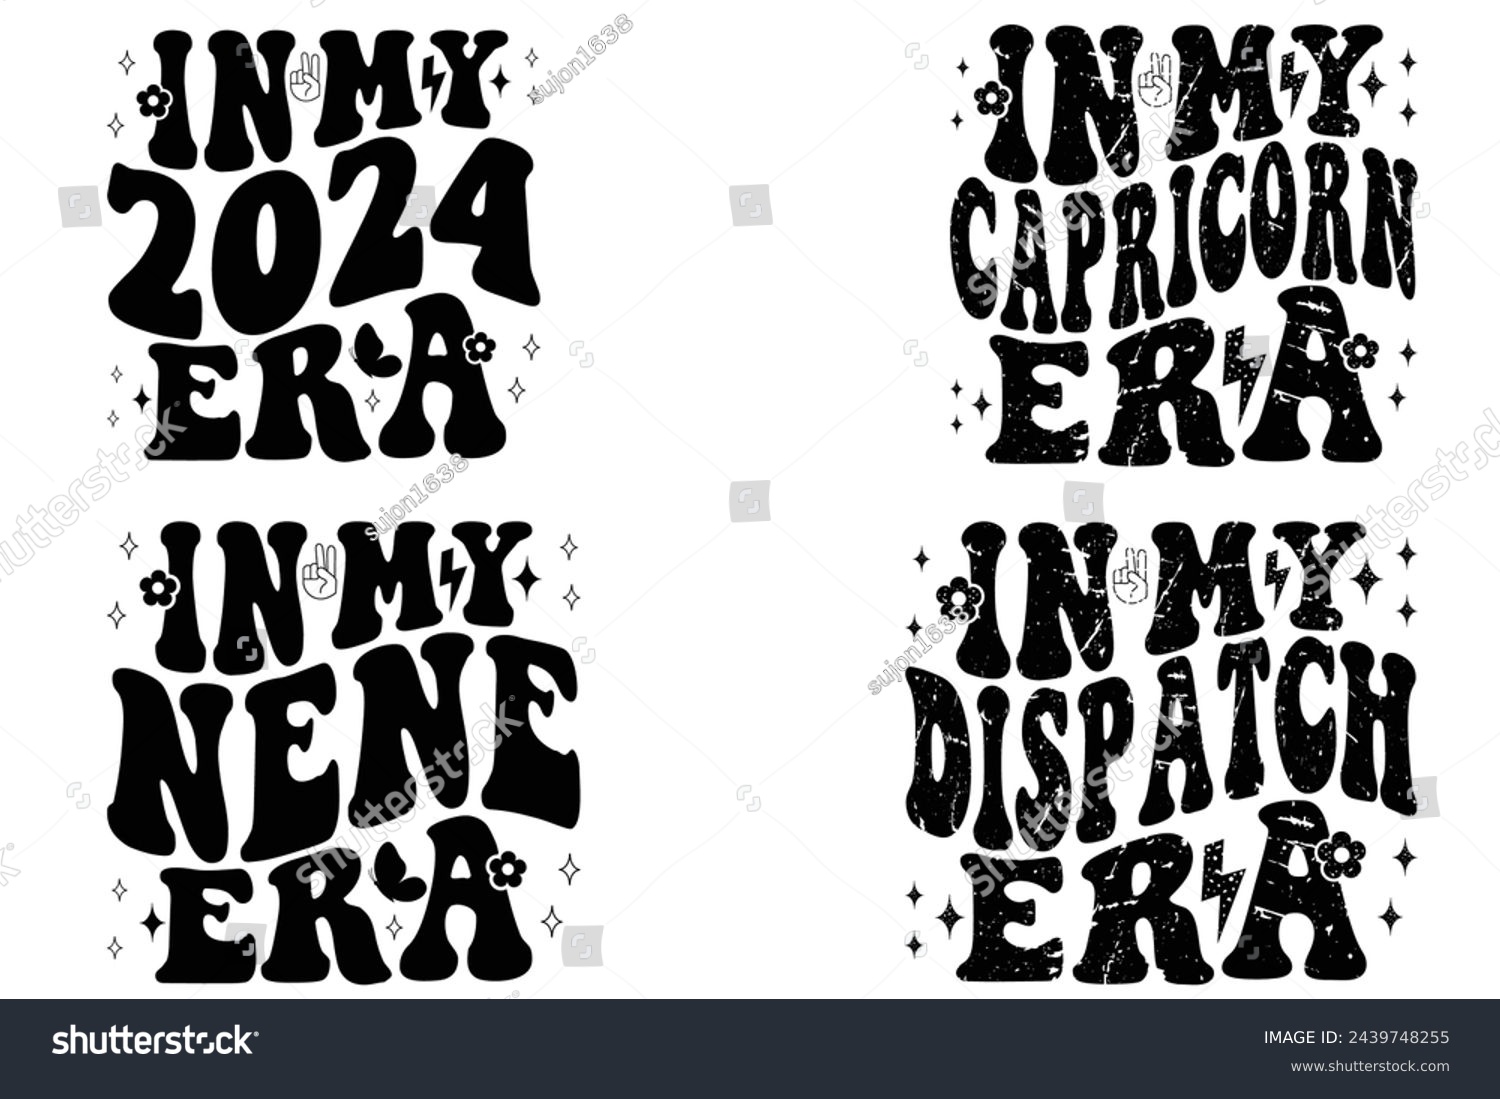 SVG of In My 2024 Era, In My Capricorn Era, In My Nene Era, In My Dispatch Era retro T-shirt svg